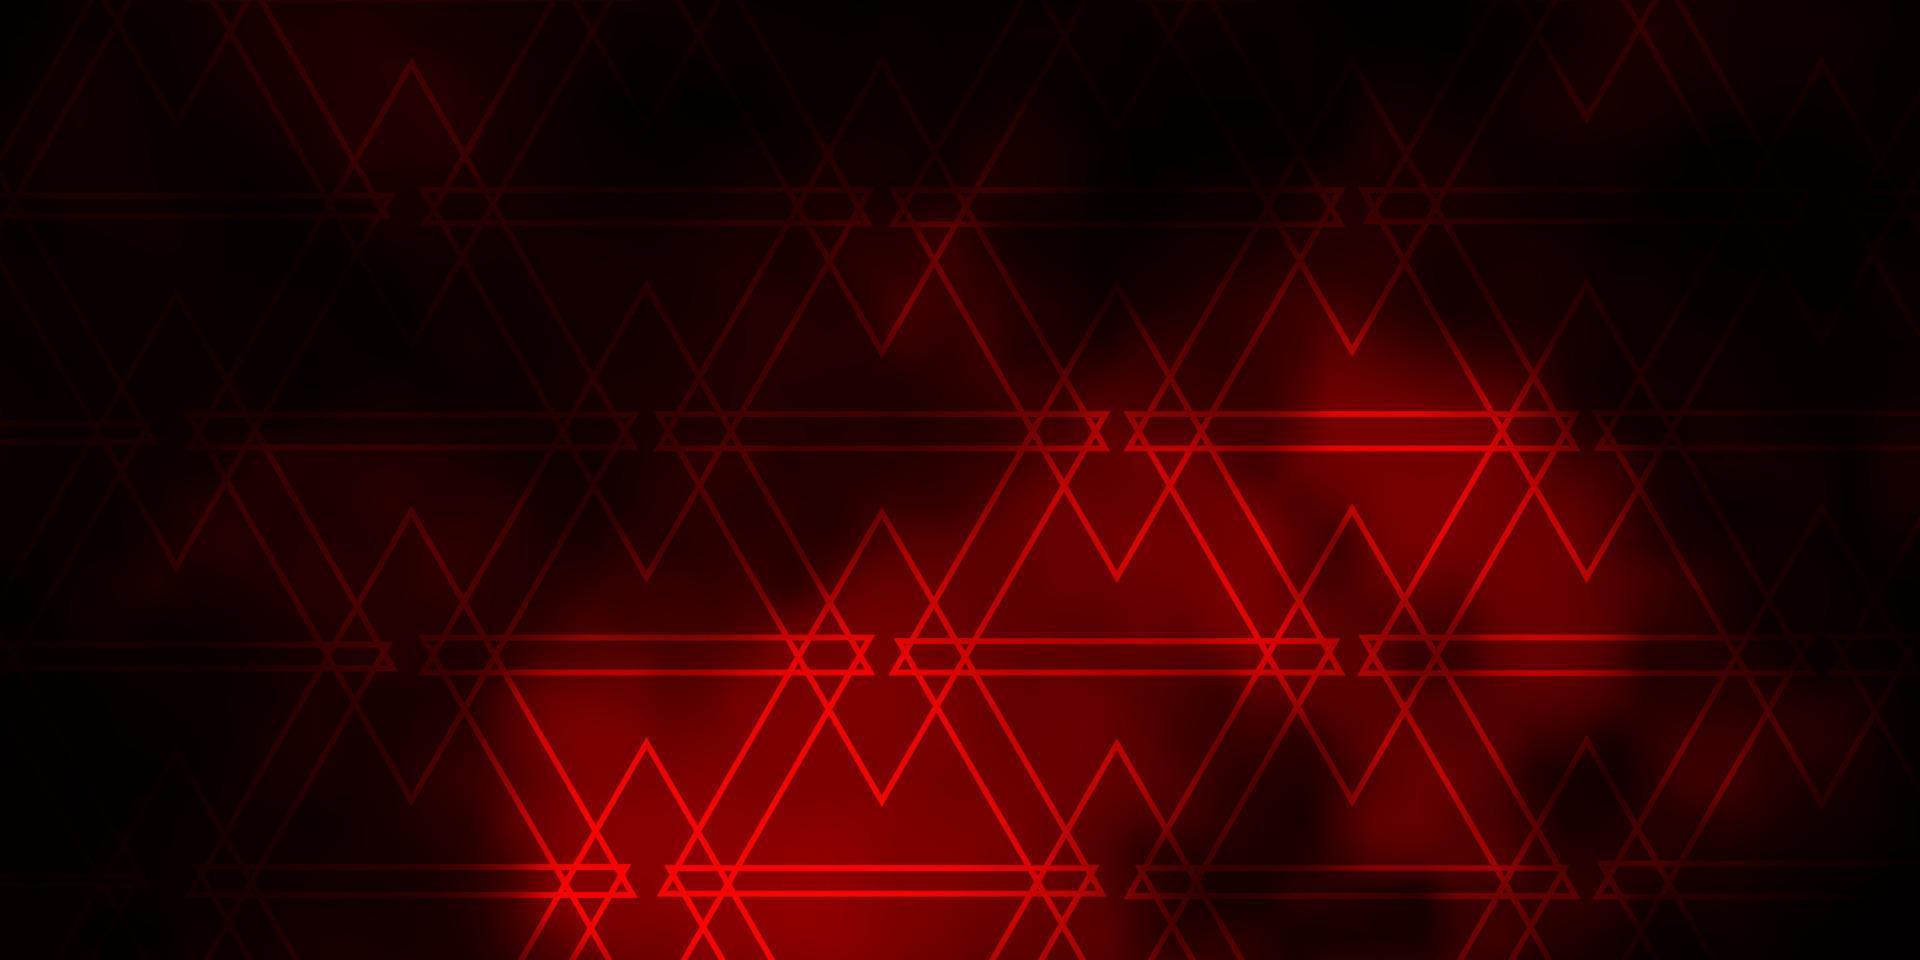 fond de vecteur rouge foncé avec des lignes, des triangles.